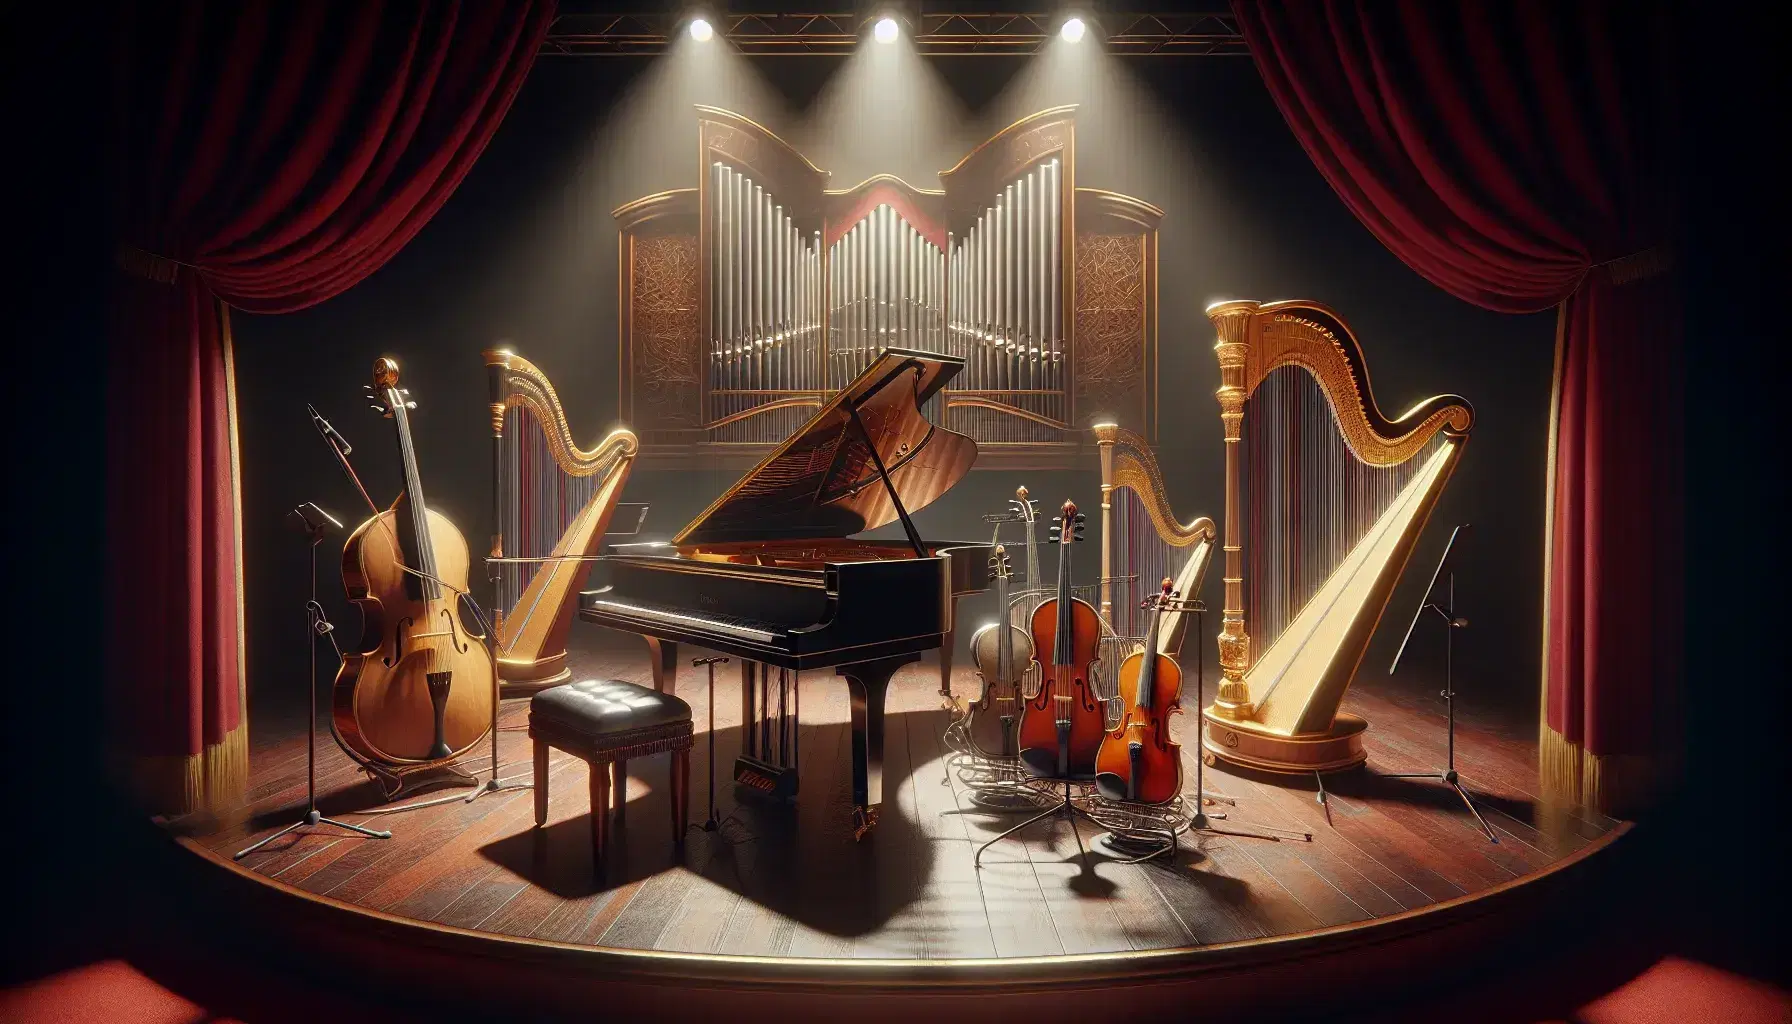 Escenario de madera con piano de cola, violín en atril, flauta transversal y arpa dorada ante cortinas rojas, iluminados por focos del techo.